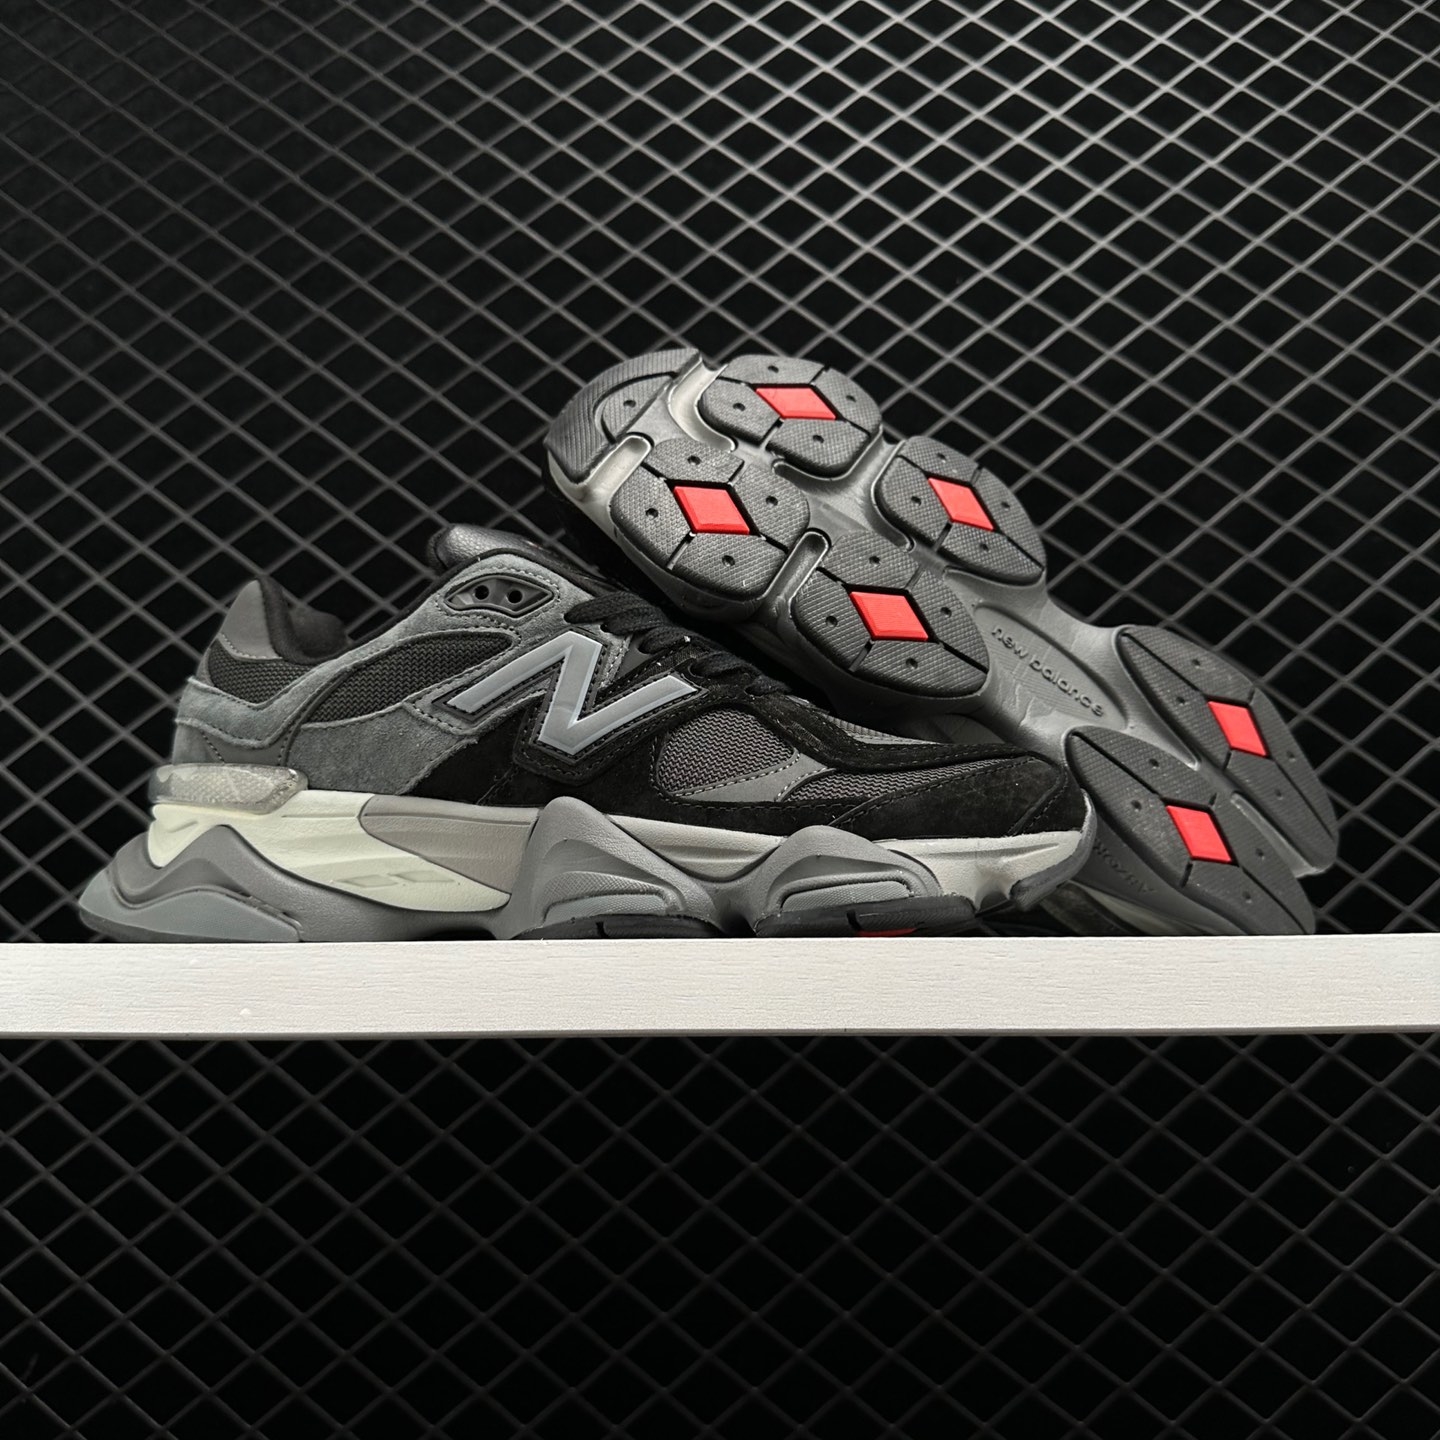 New Balance 9060 'Black Castlerock' U9060BLK - Sleek and Stylish Athletic Shoes